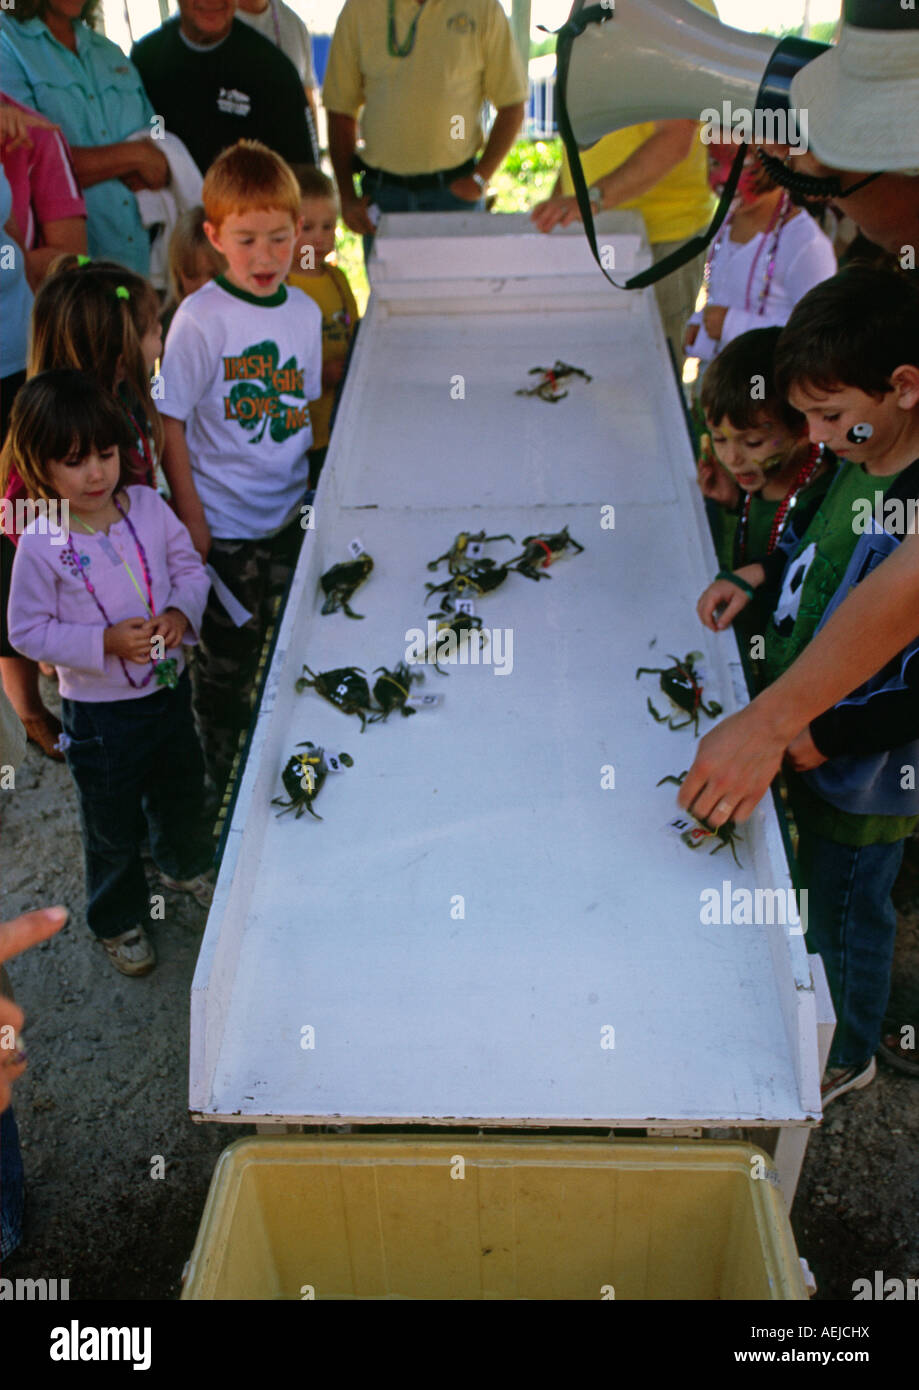 Carrera de cangrejos en Florida, EE.UU. en una feria Foto de stock